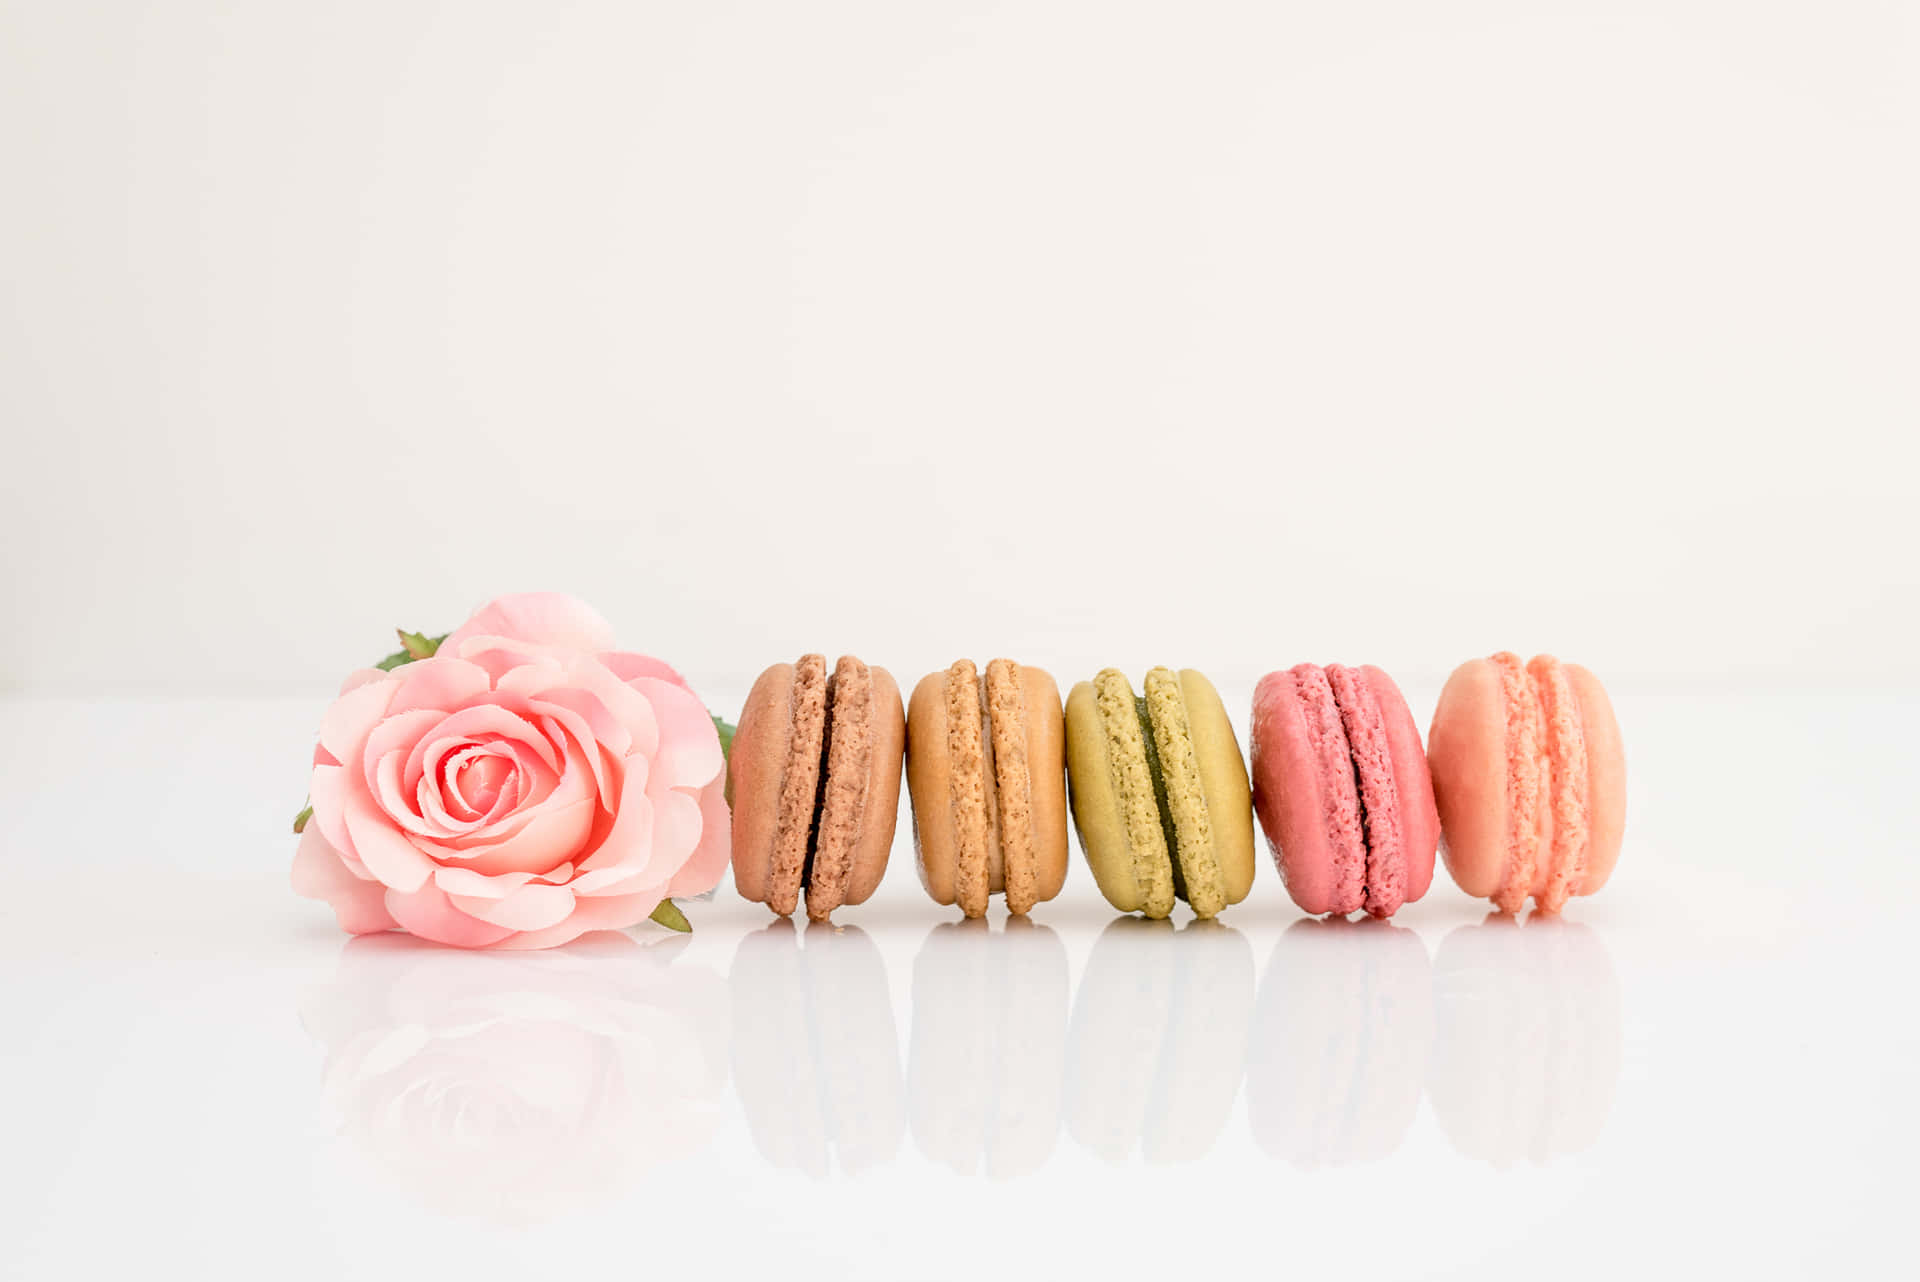 Ineiner Reihe Platzierte Macarons Mit Rose Wallpaper